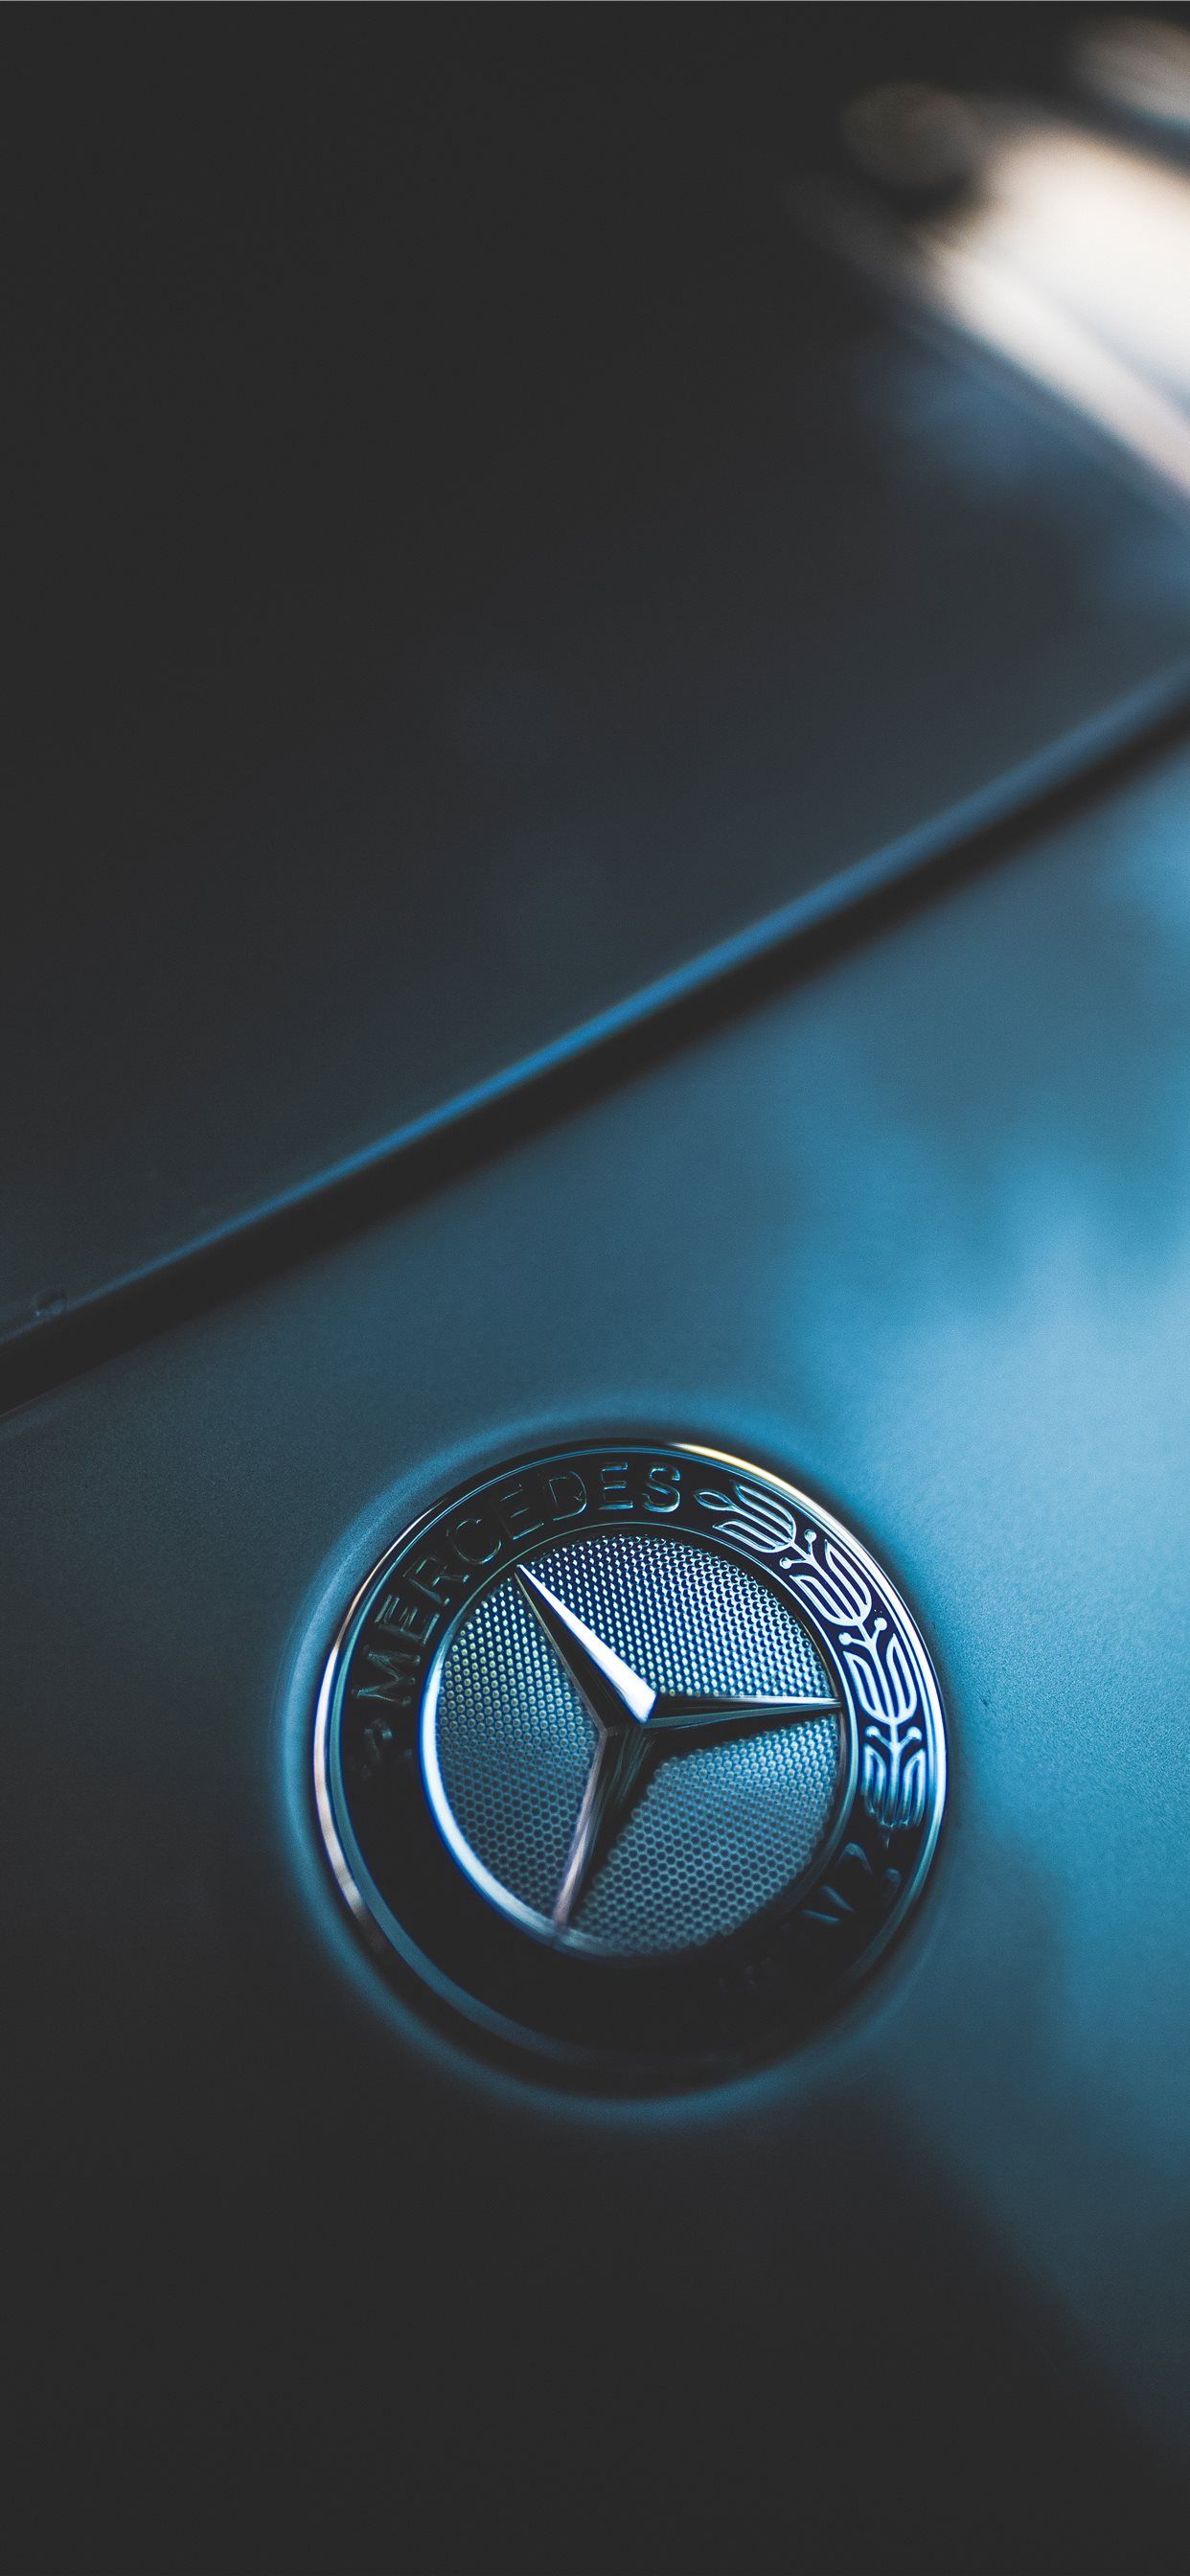 closeup photo of Mercedes Benz emblem iPhone Wallpaper Free Download